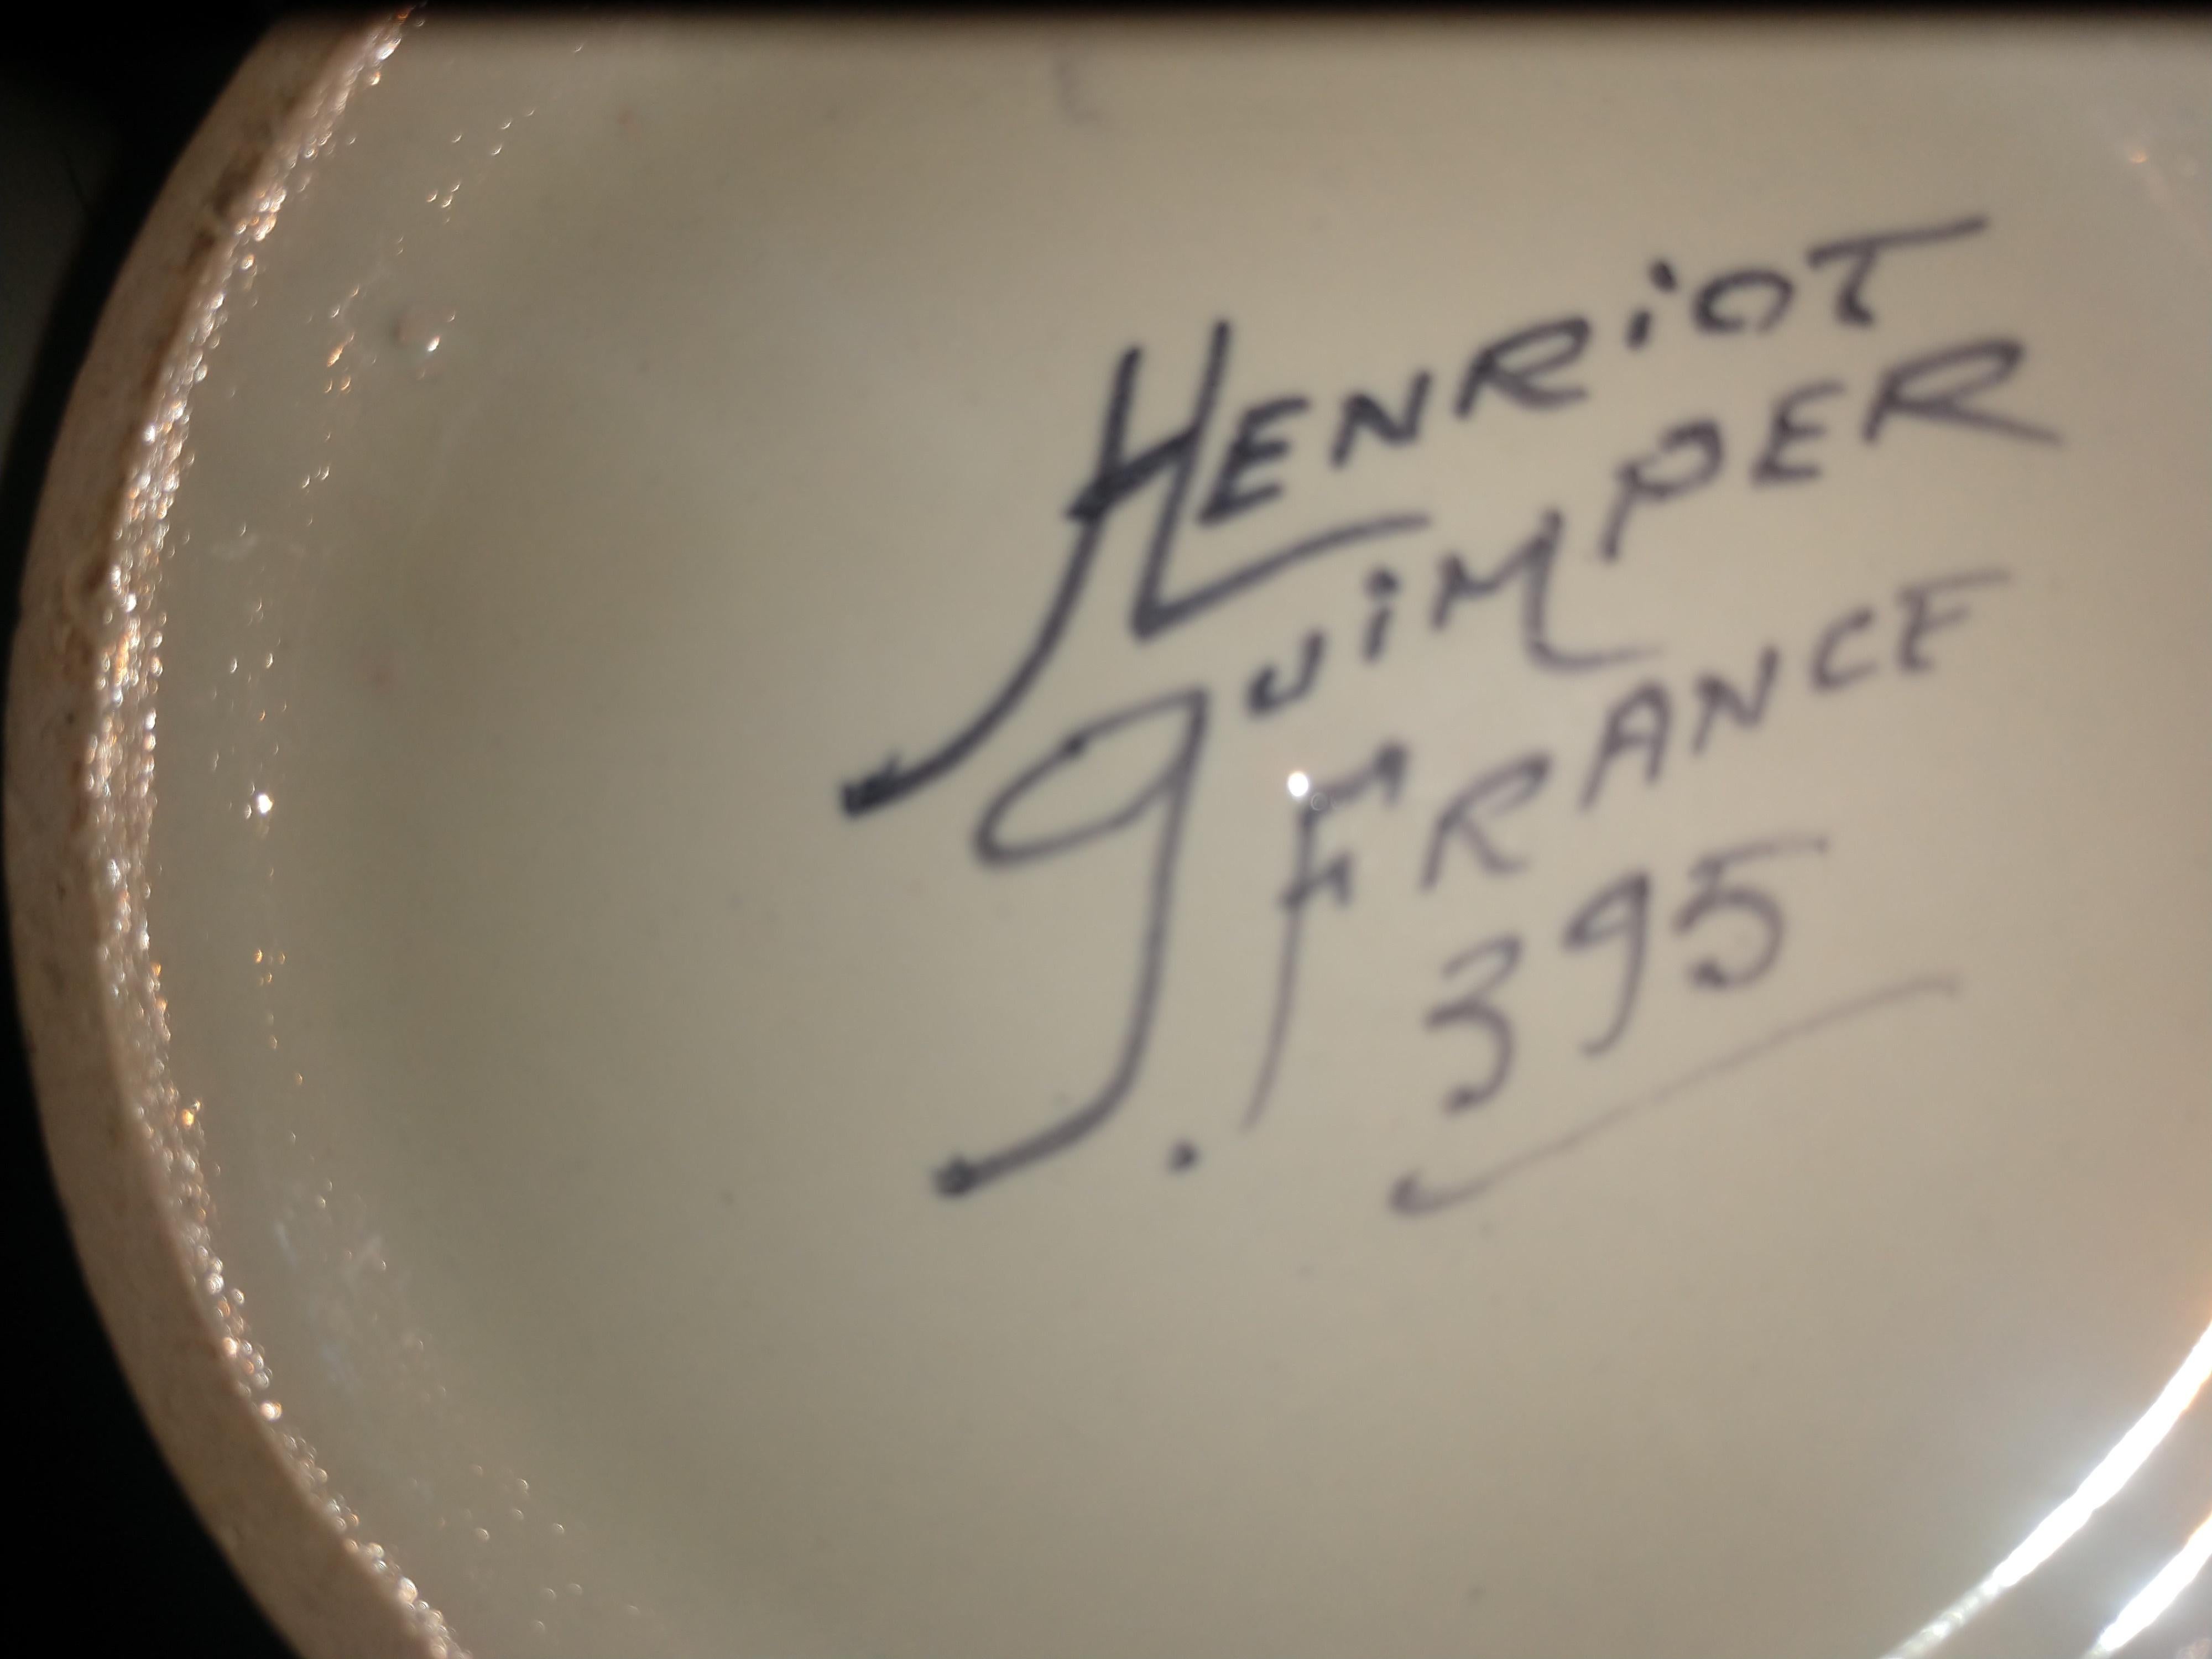 henriot quimper signatures